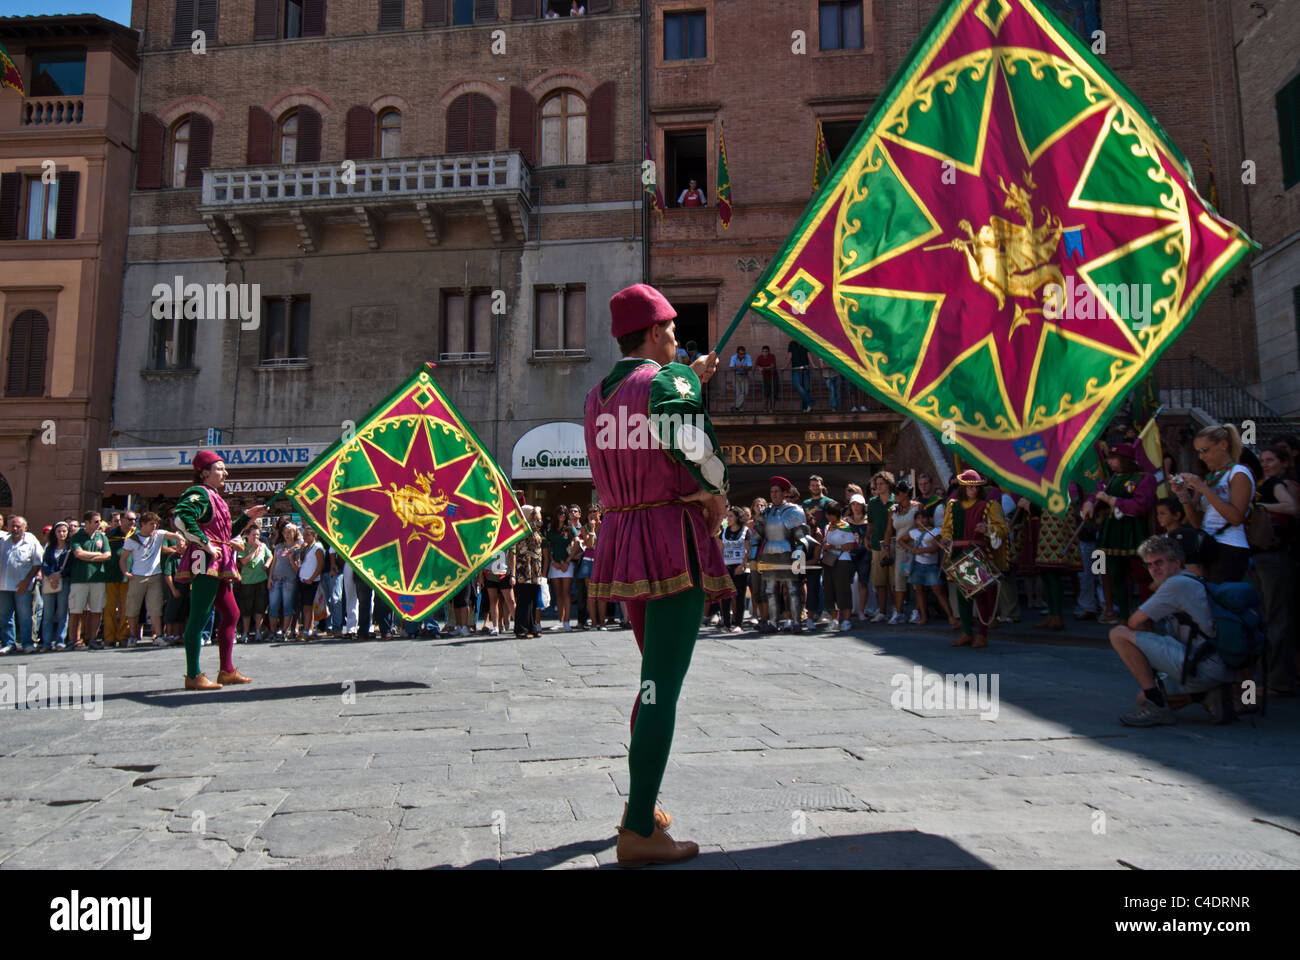 Sienna le jour de la célèbre course de chevaux Palio avec drapeaux et bannières décorant les rues et le concours avant la course. Banque D'Images